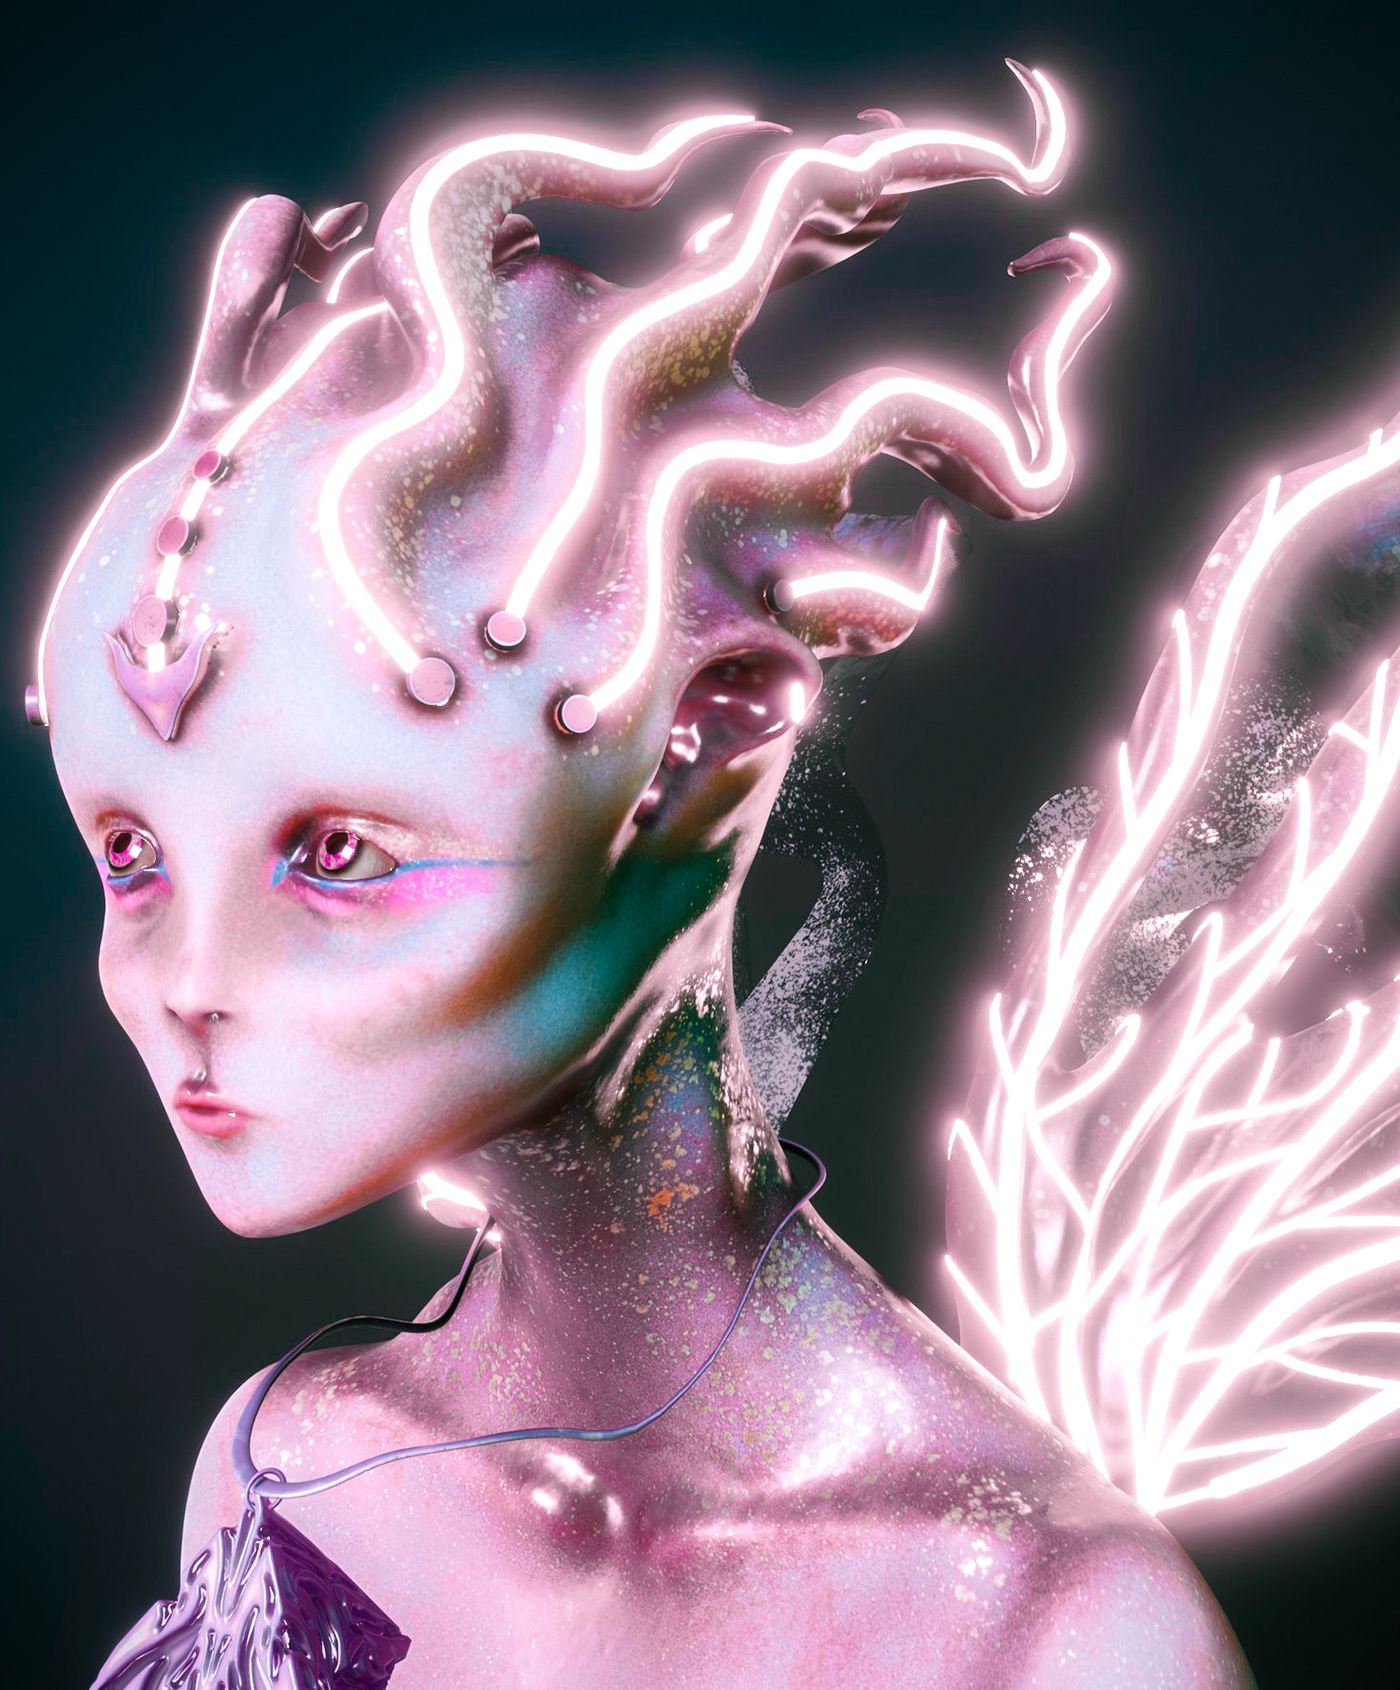 scifiart 3dart alien 3dmodeling Zbrush 3D Character design  Digital Art  ILLUSTRATION 